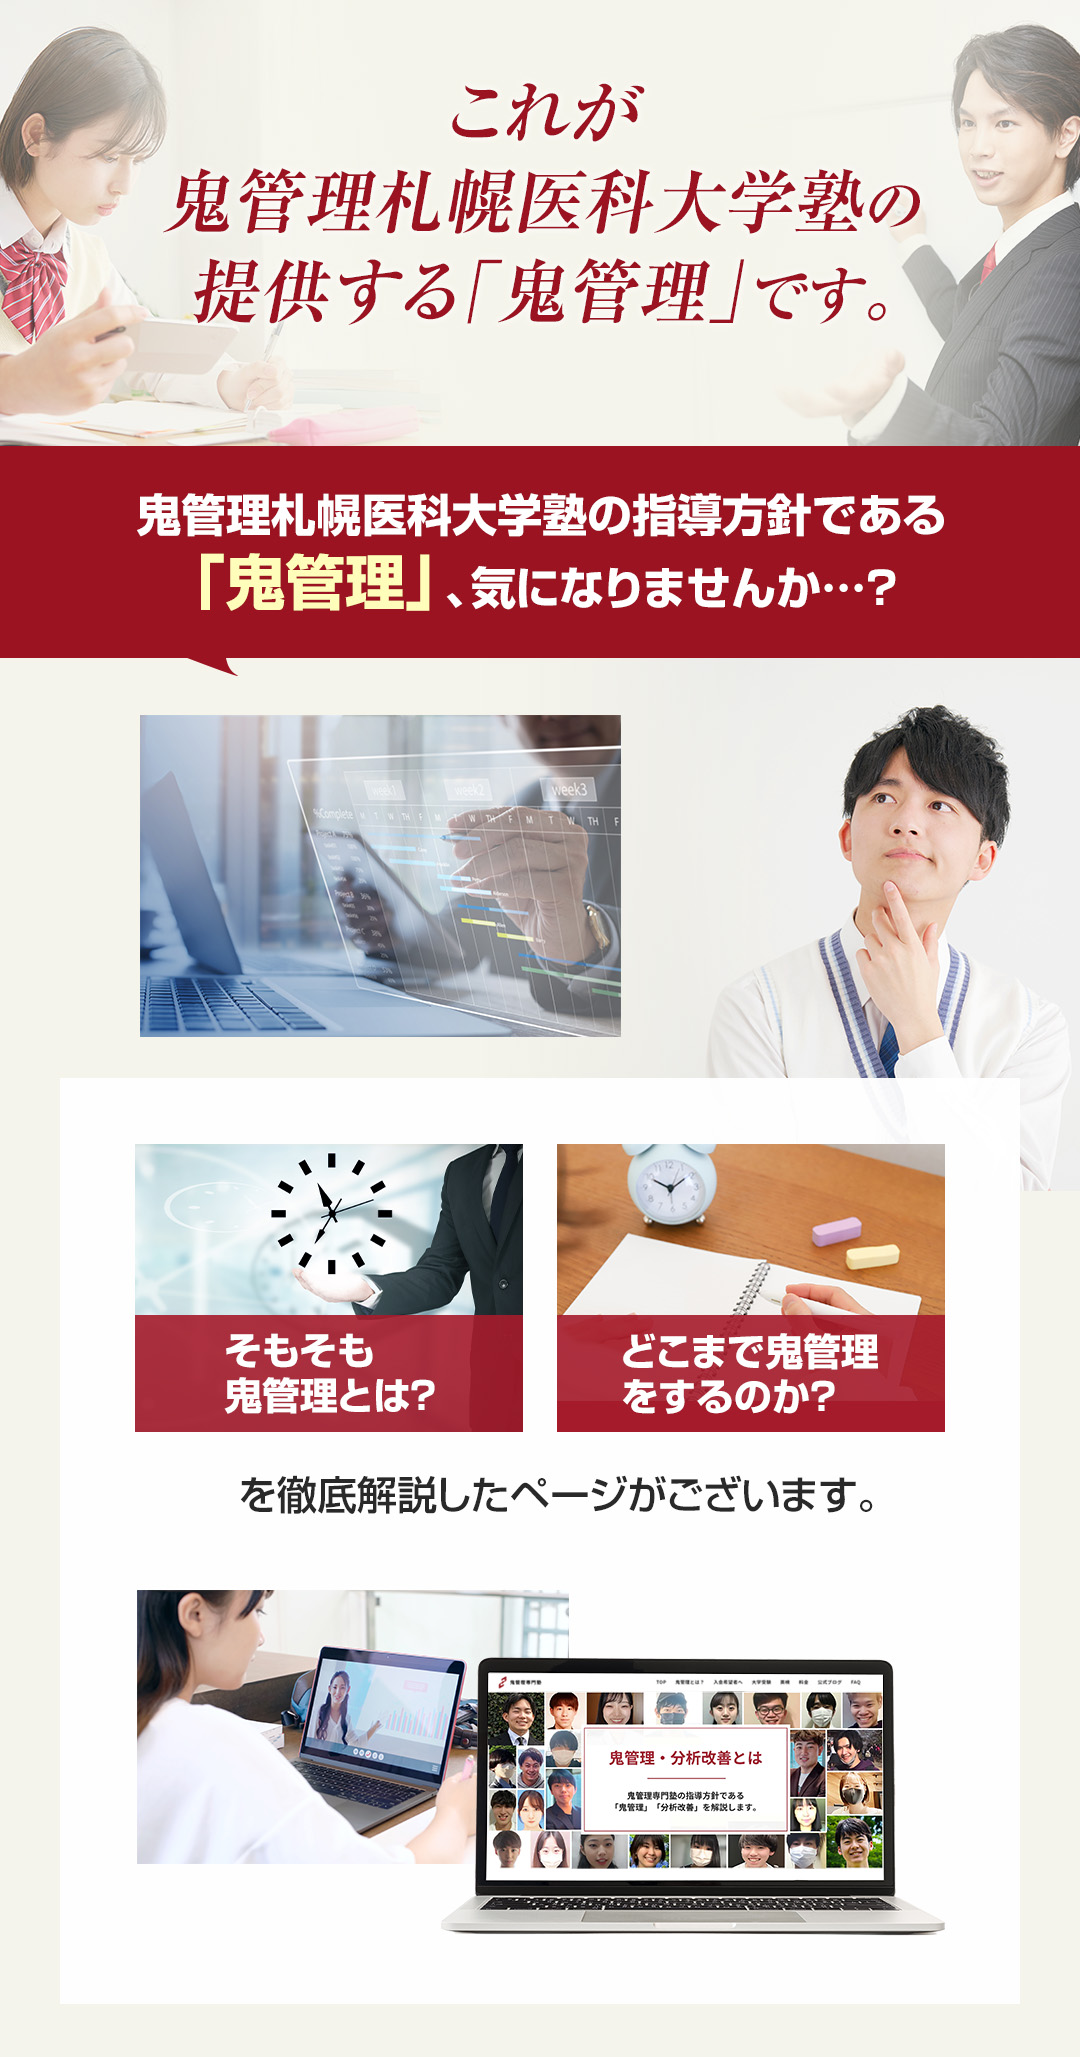 これが鬼管理札幌医科大学塾の提供する「鬼管理」です